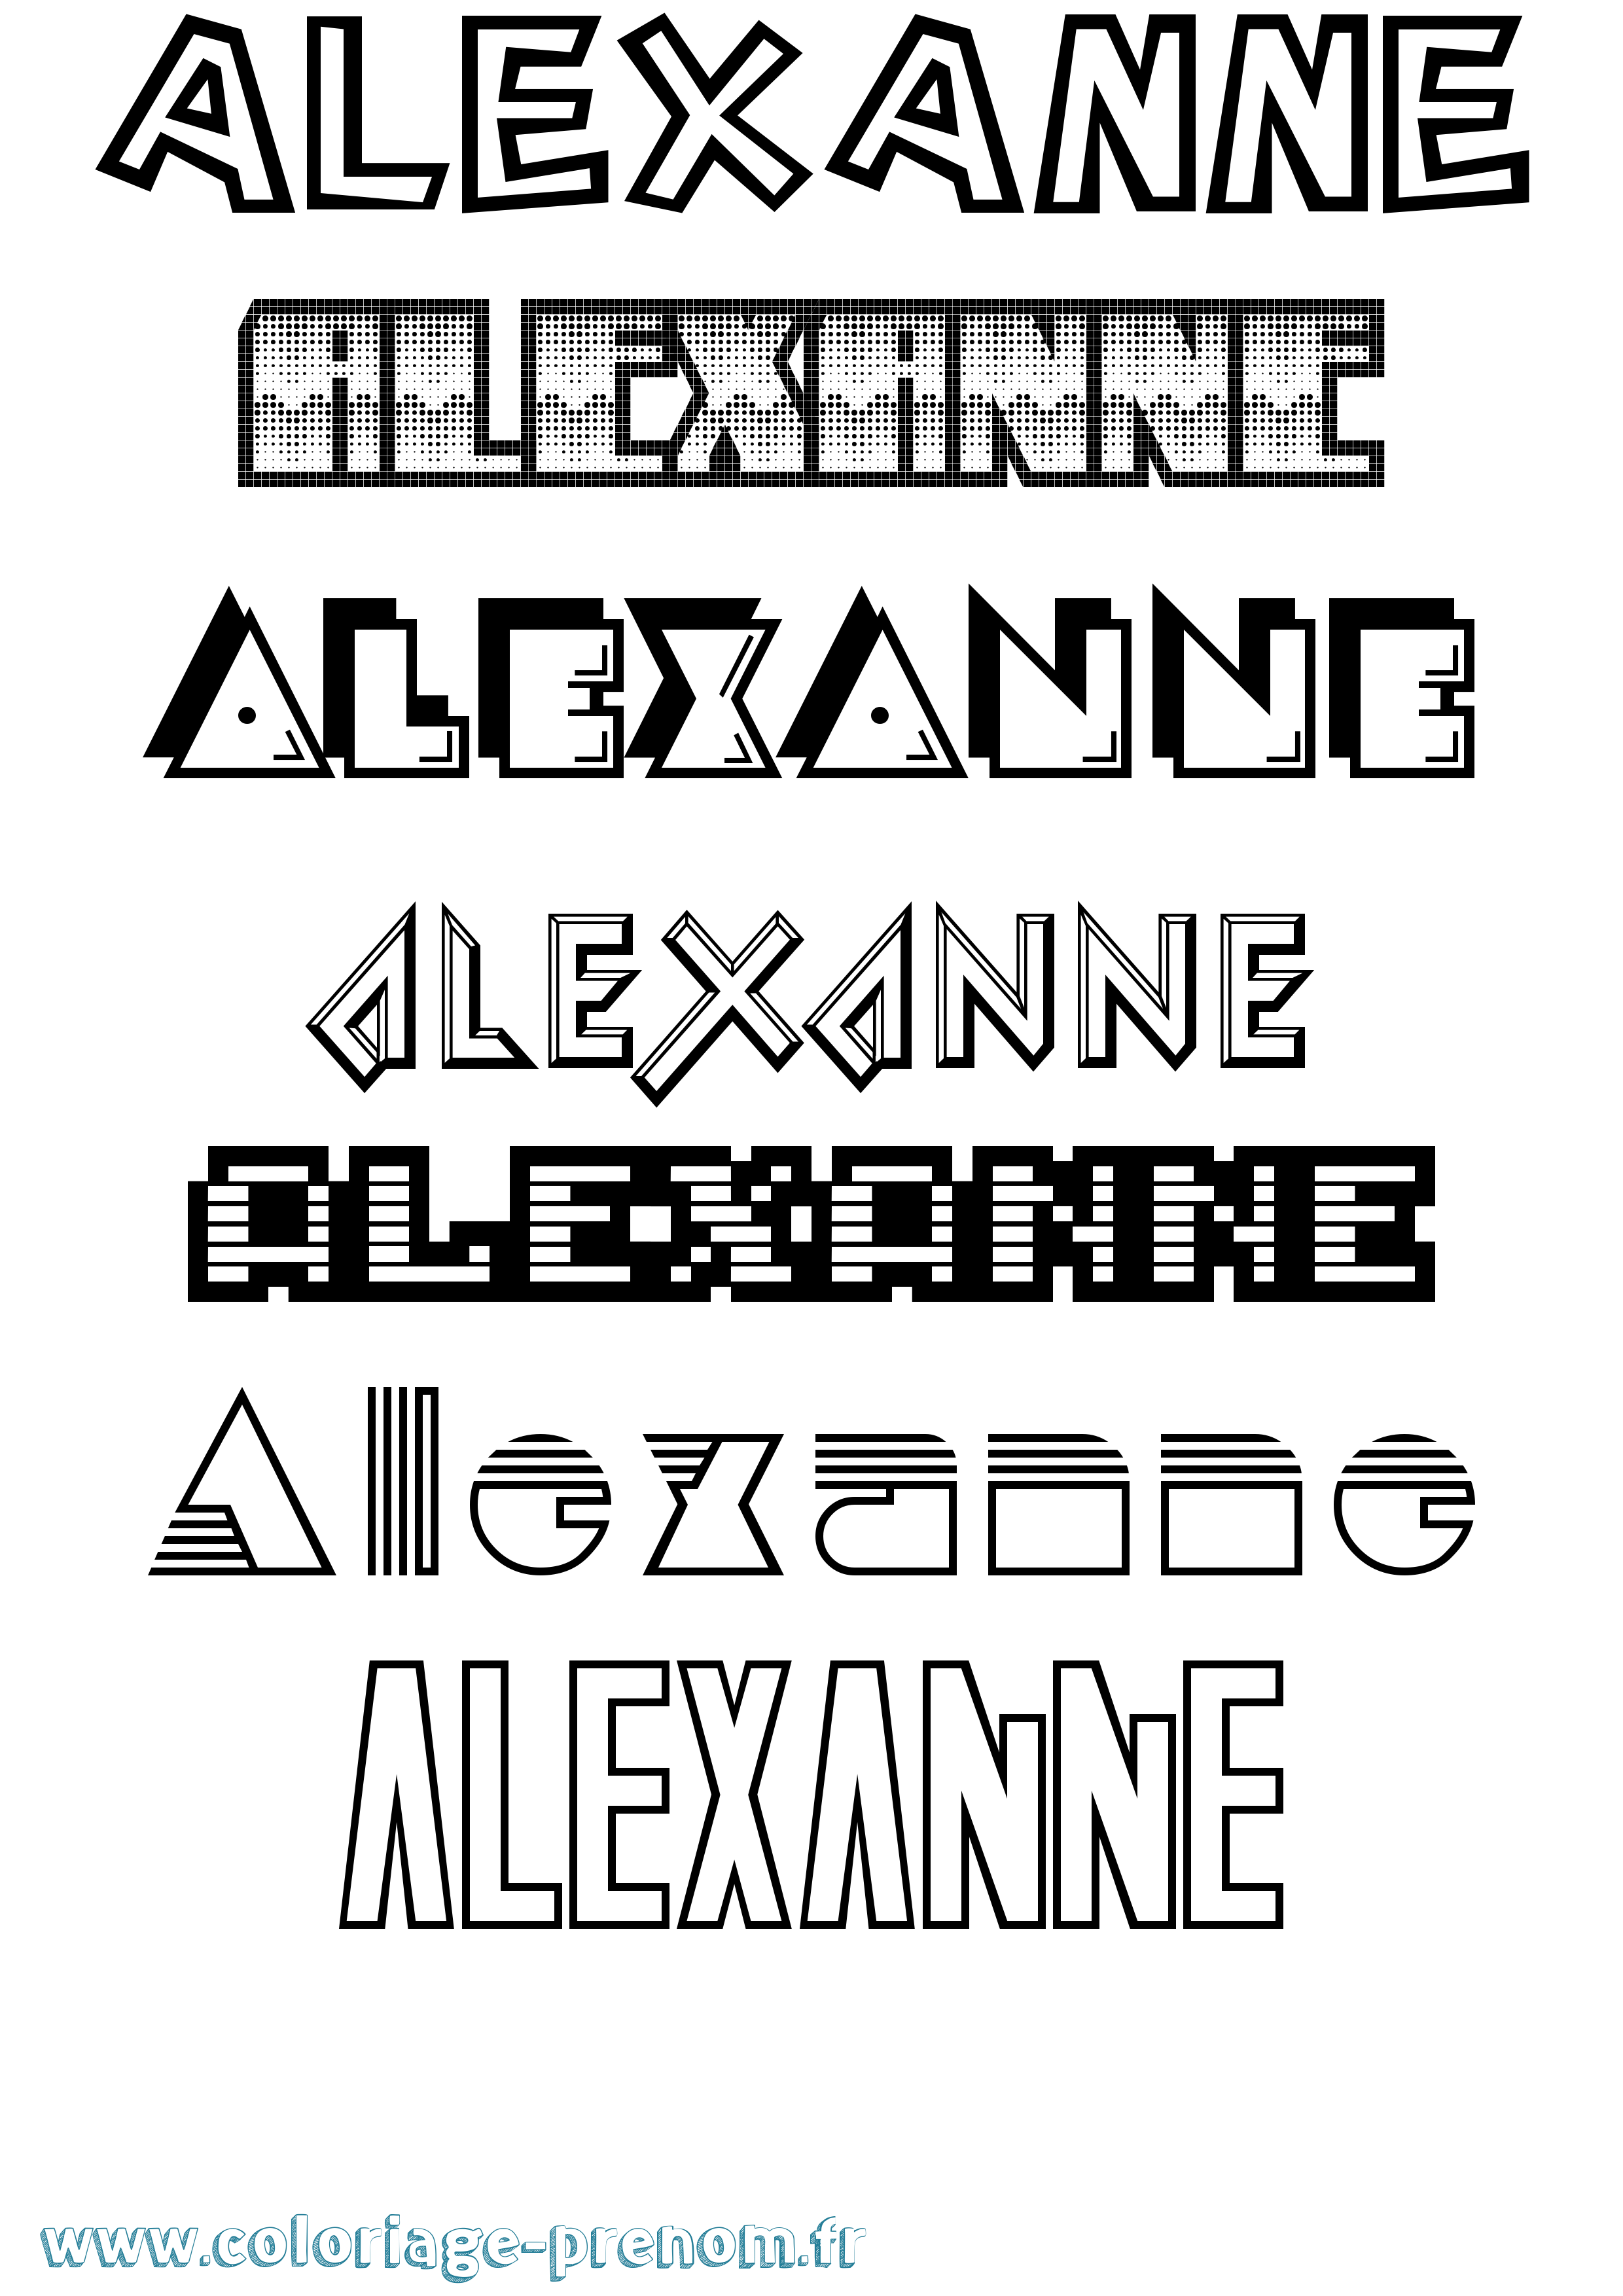 Coloriage prénom Alexanne Jeux Vidéos